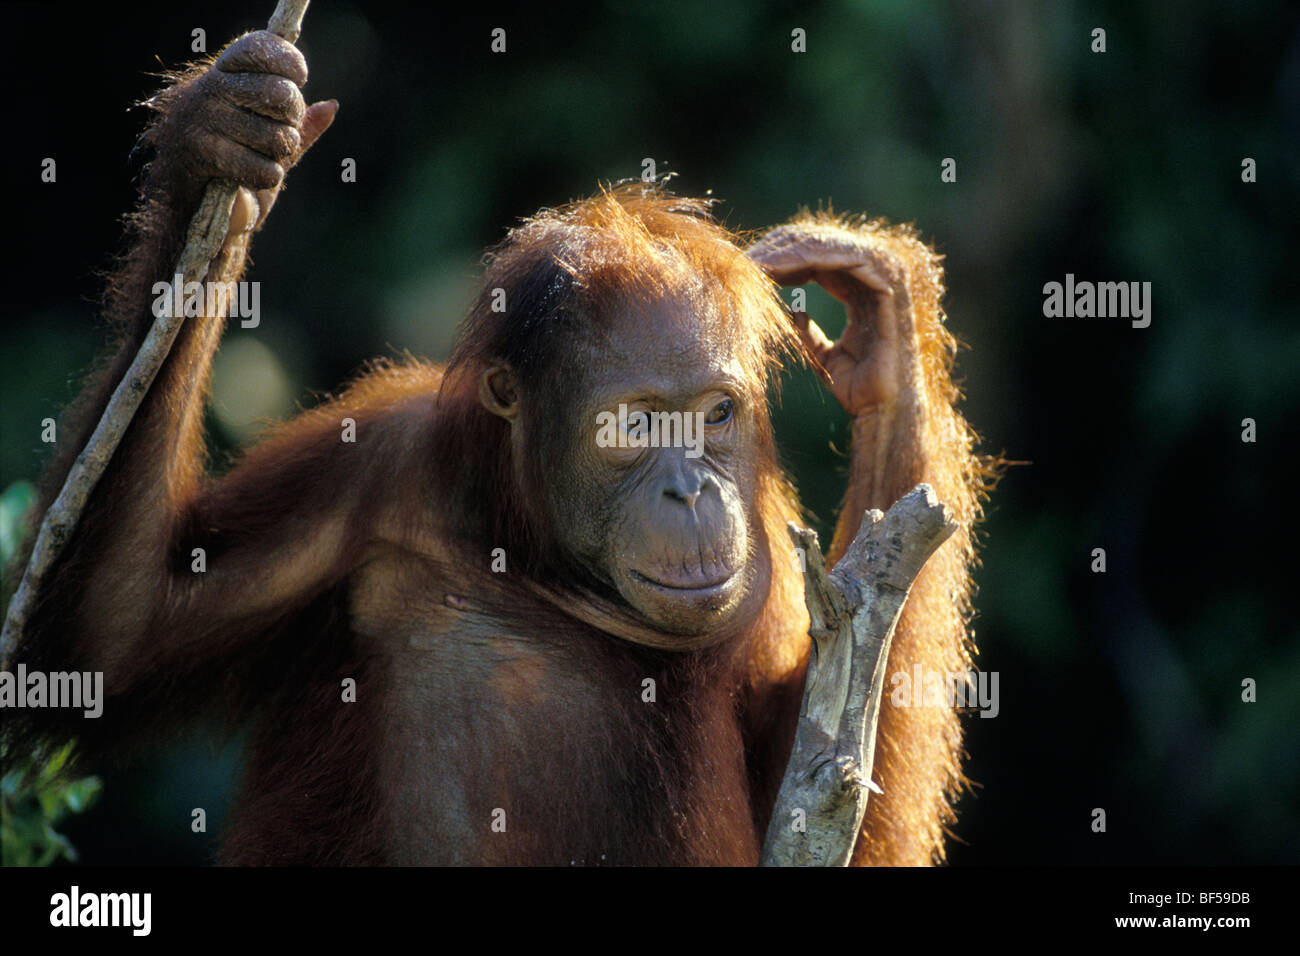 Les jeunes orang-outan (Pongo pygmaeus) dans l'arbre, réfléchie, parc national de Tanjung Puting, Bornéo Banque D'Images